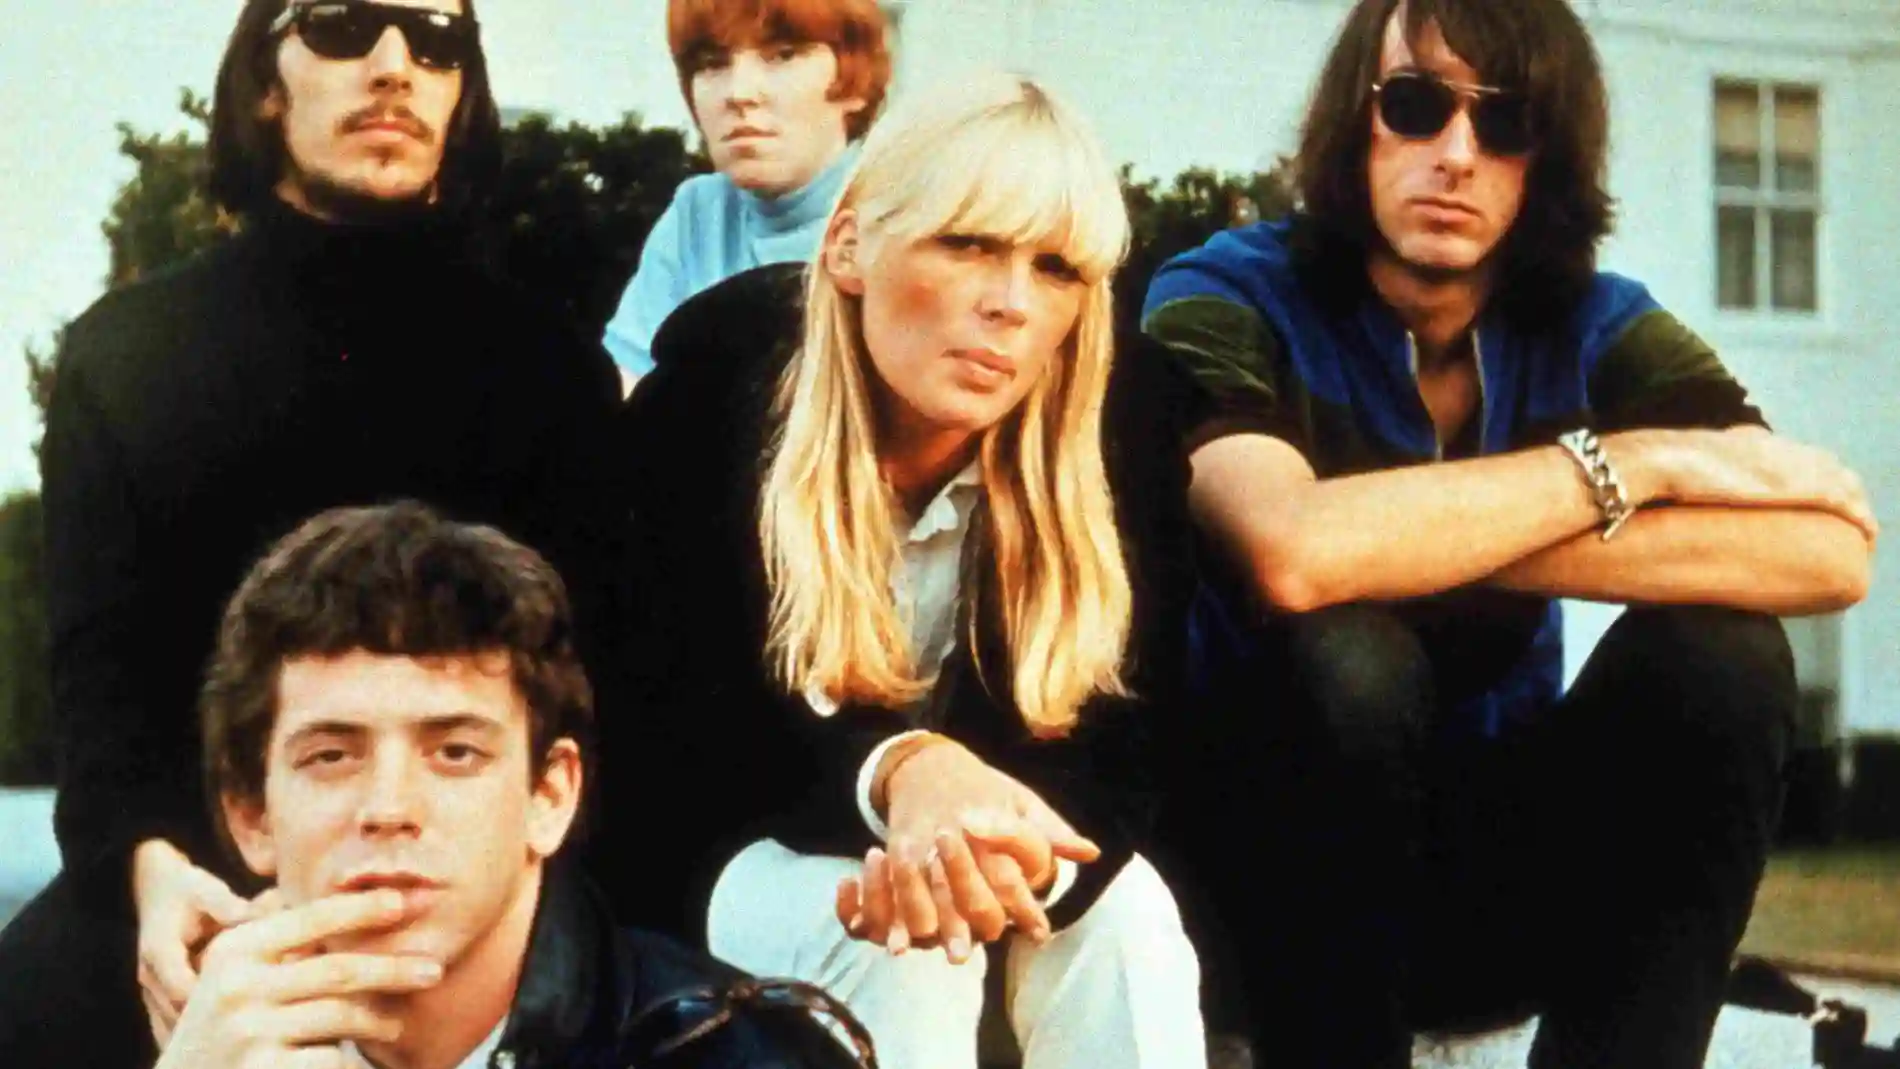 Nico, en el centro de la imagen, junto a los miembros de The Velvet Underground. Lou Reed, abajo a la izquierda